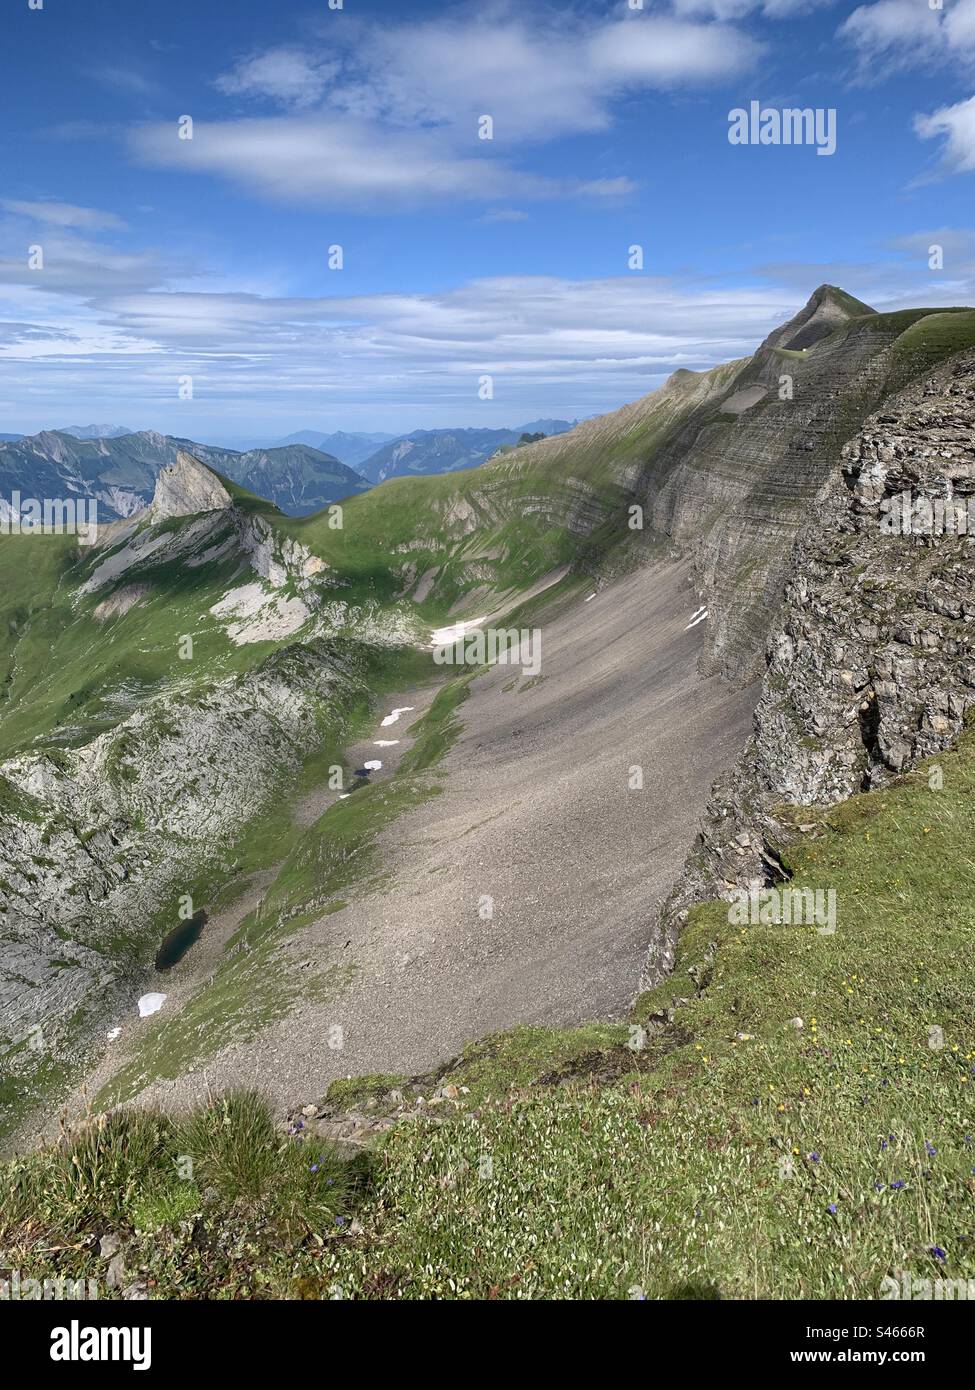 Escursioni a Schynige platte interlaken nelle alpi svizzere Foto Stock